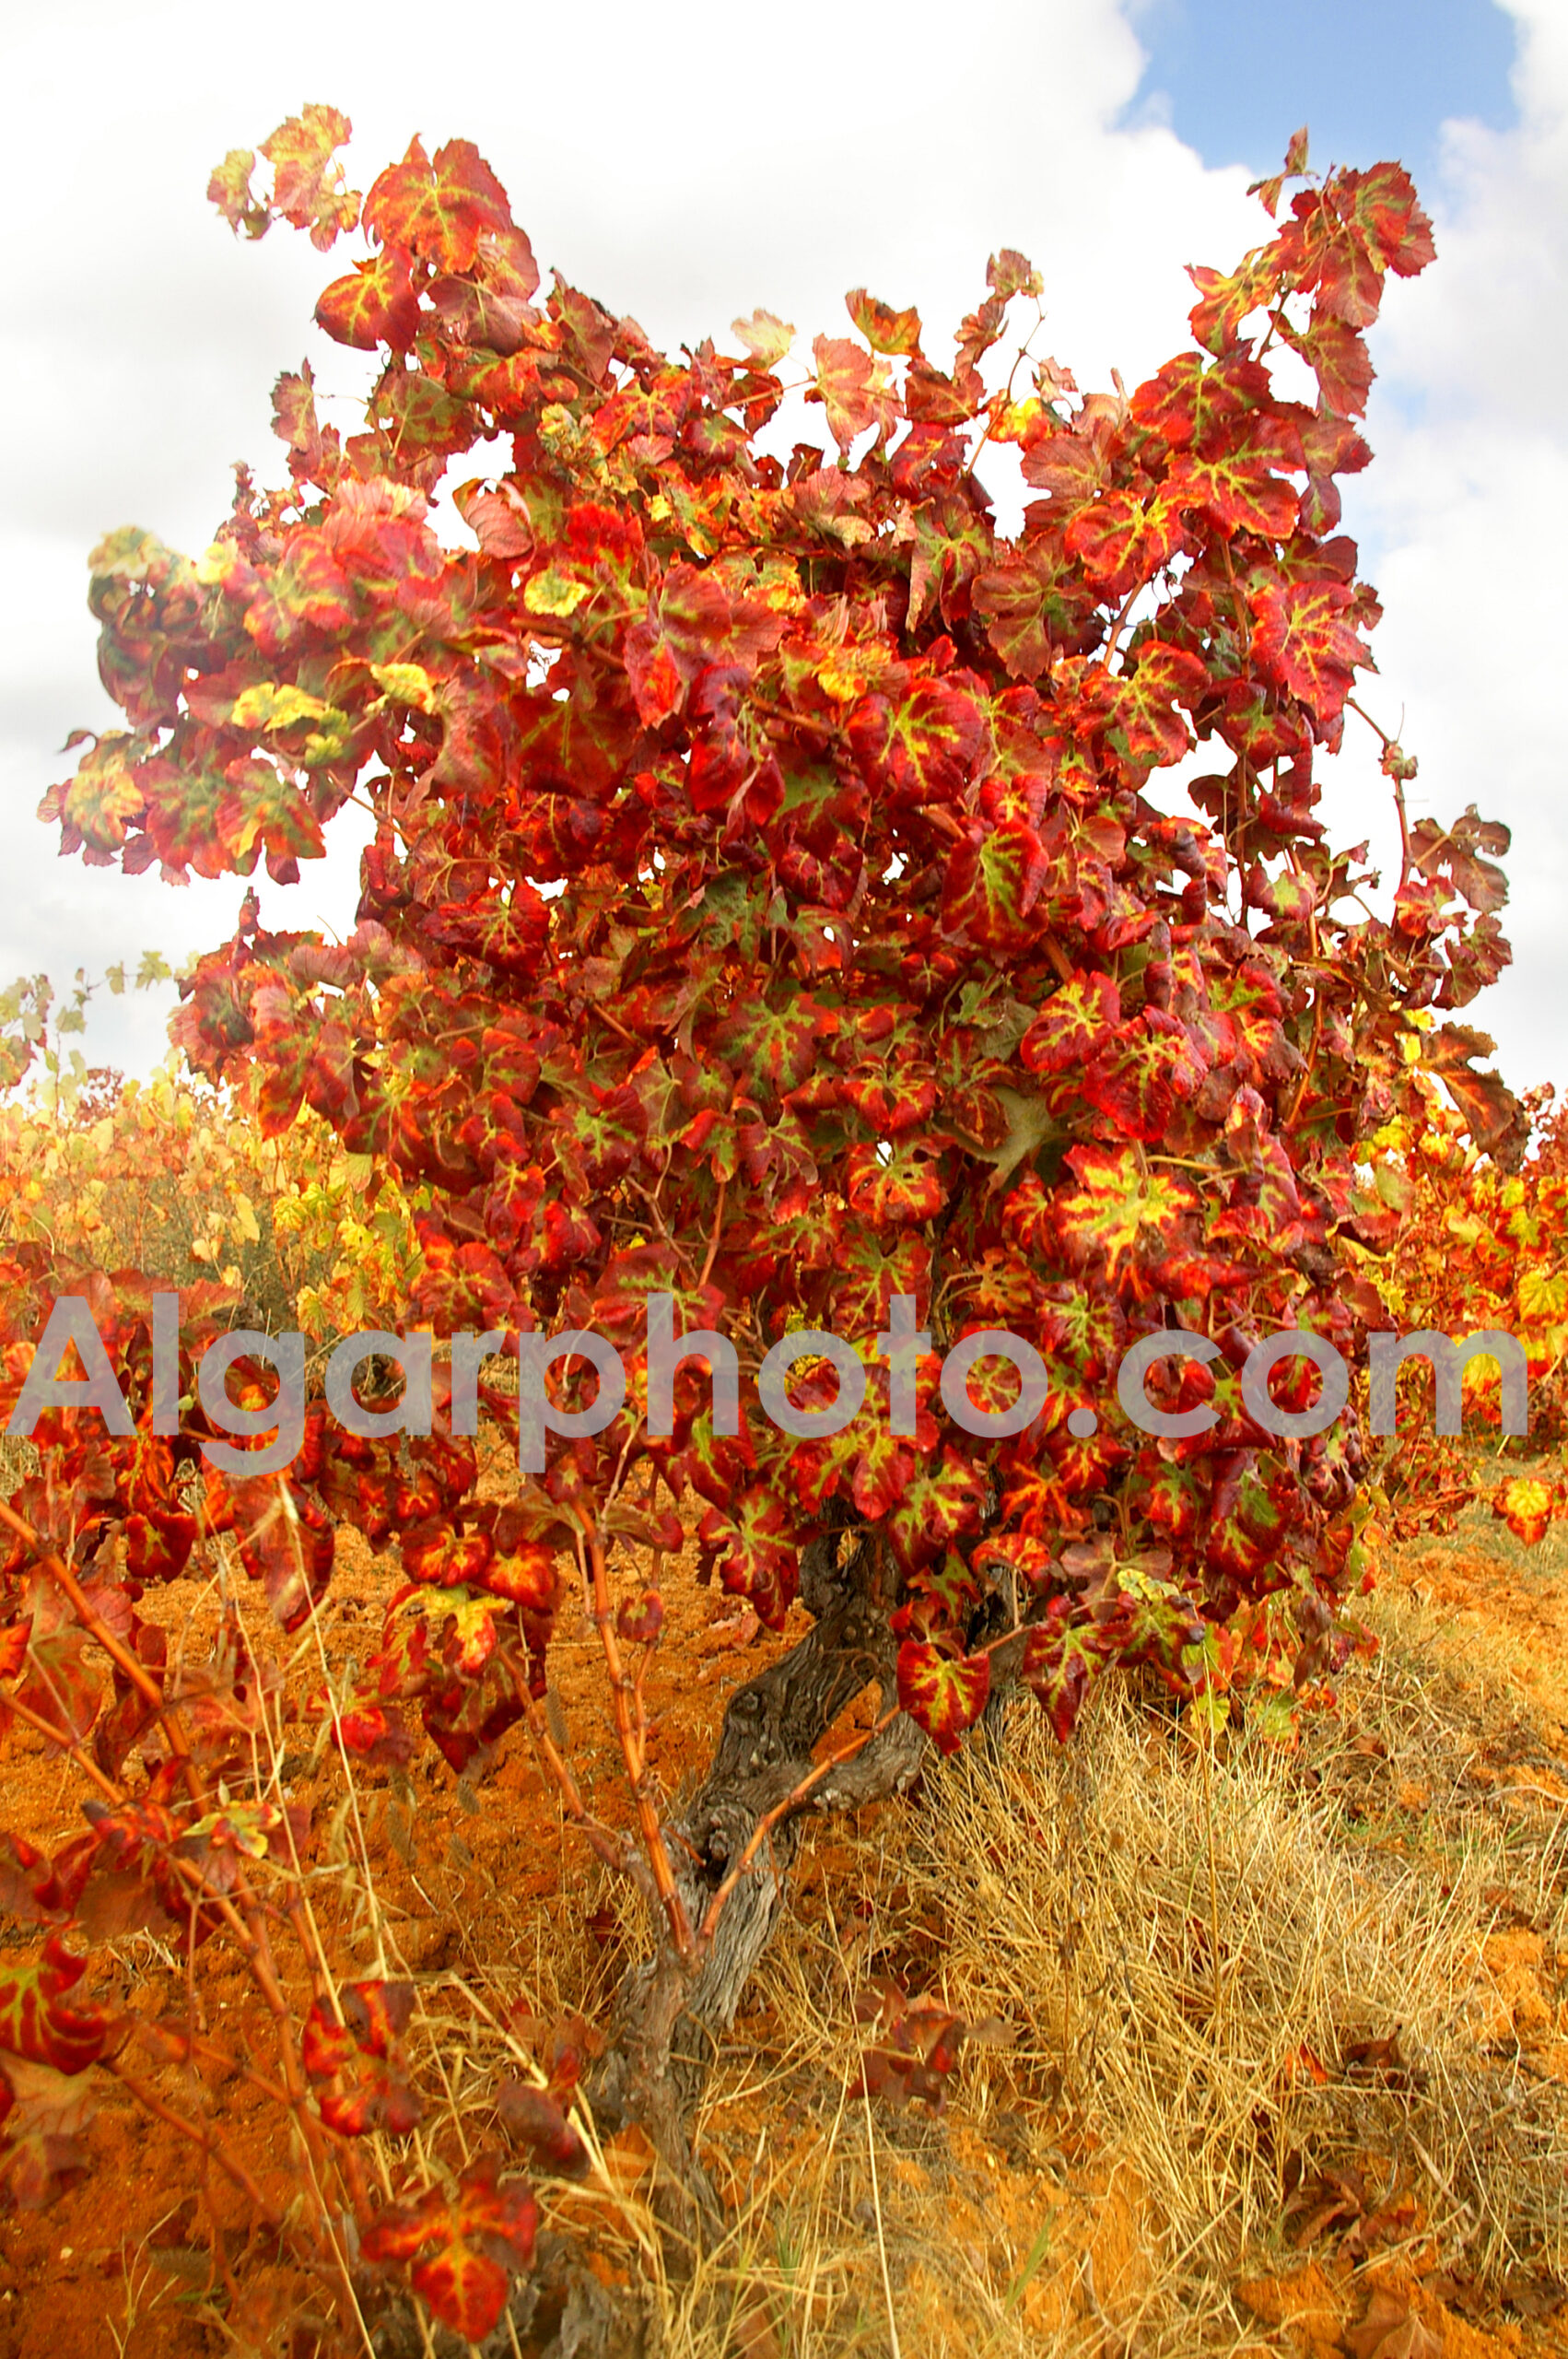 Algarve photography colour images by algarphoto